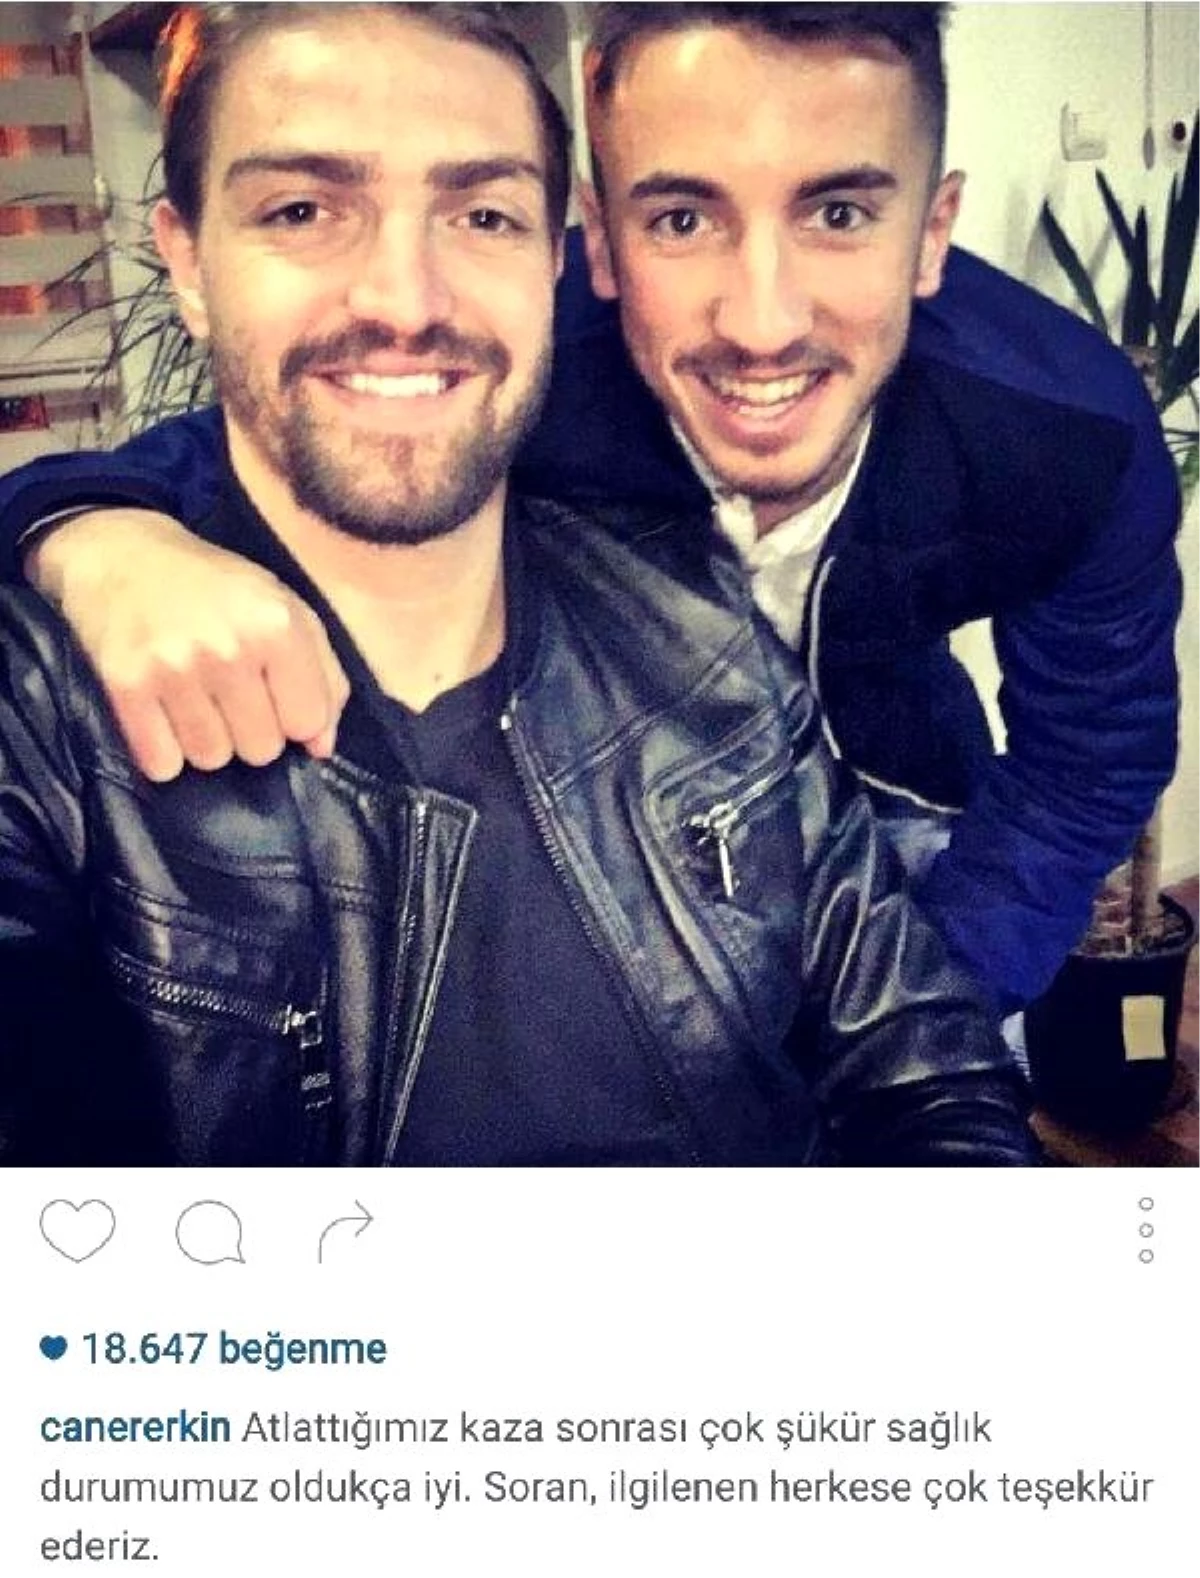 Fenerbahçeli Caner Erkin: "Çok Şükür Sağlık Durumumuz Oldukça İyi"